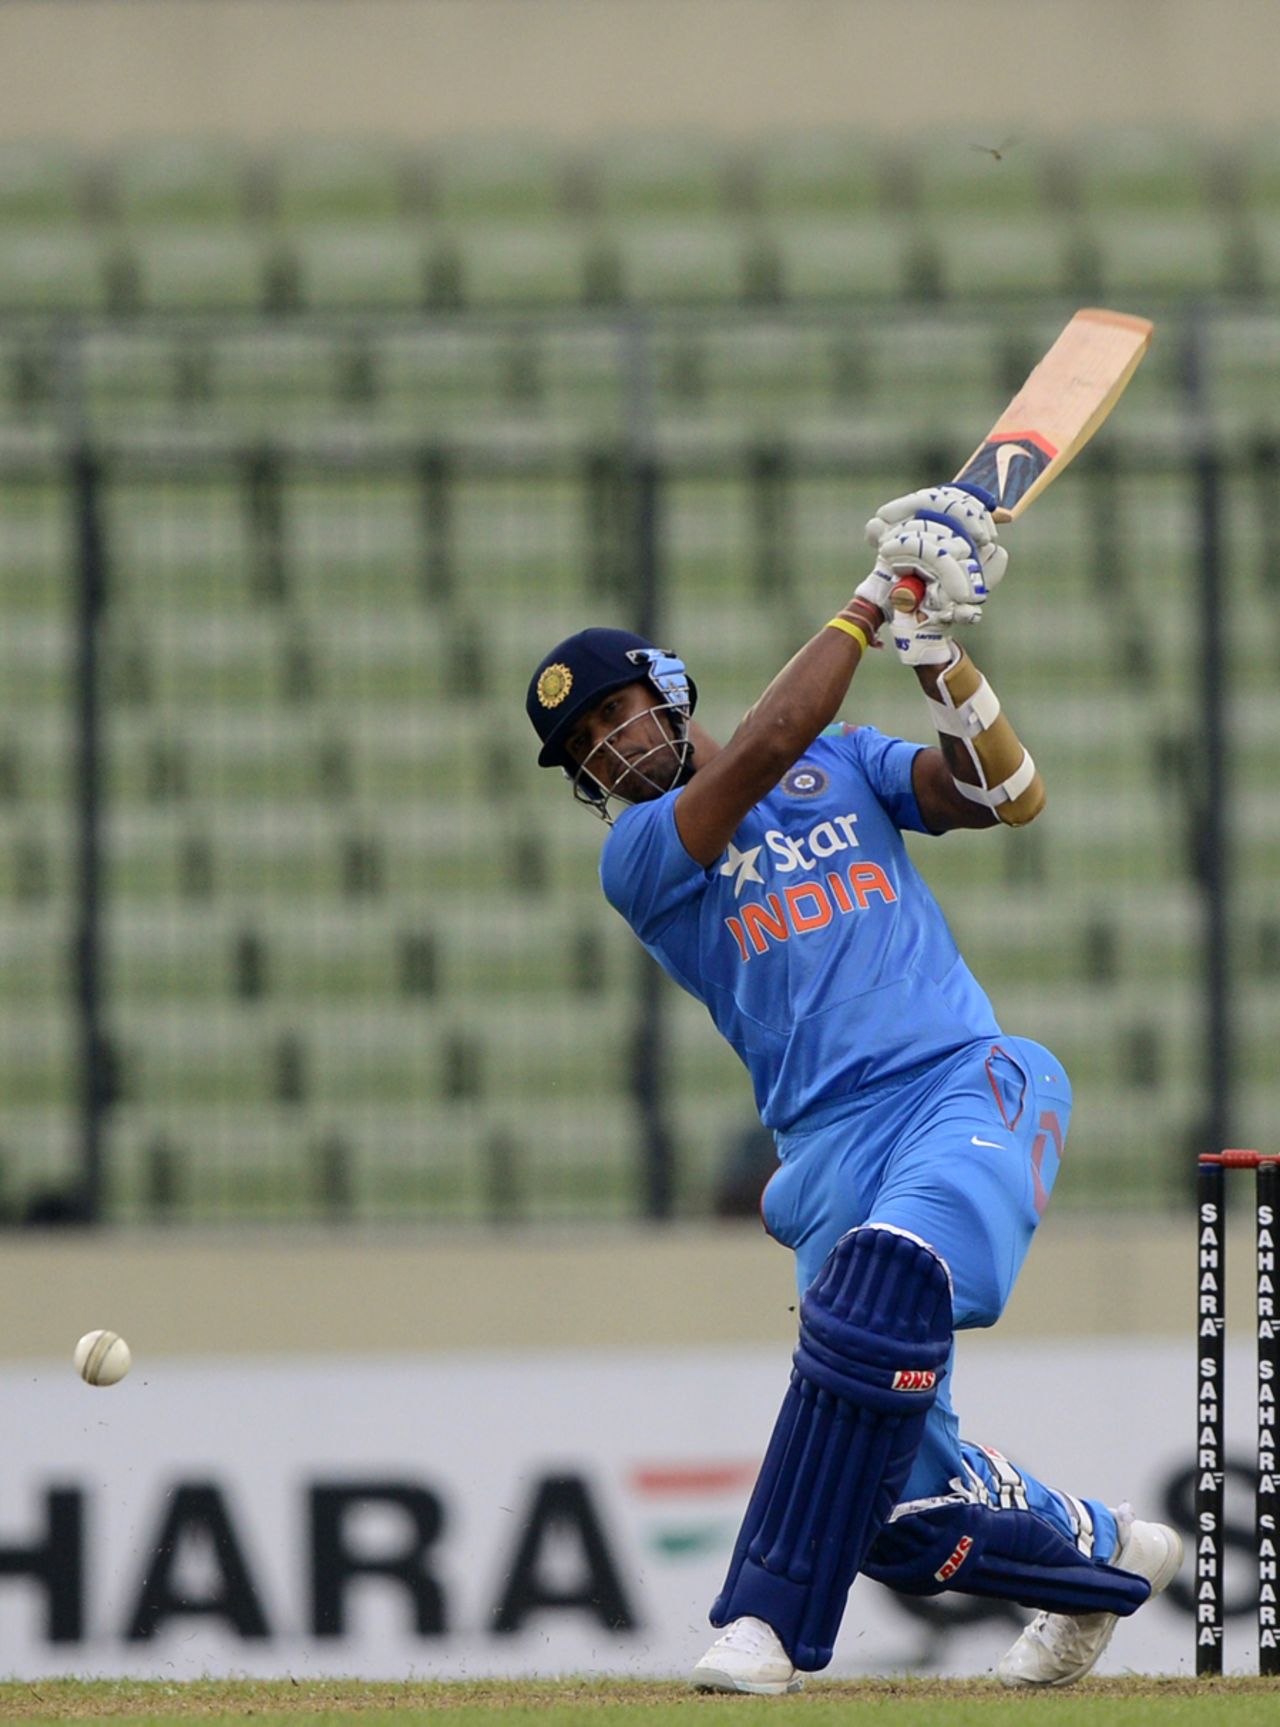 No. 11 Umesh Yadav hits out, Bangladesh v India, 2nd ODI, Mirpur, June 17, 2014